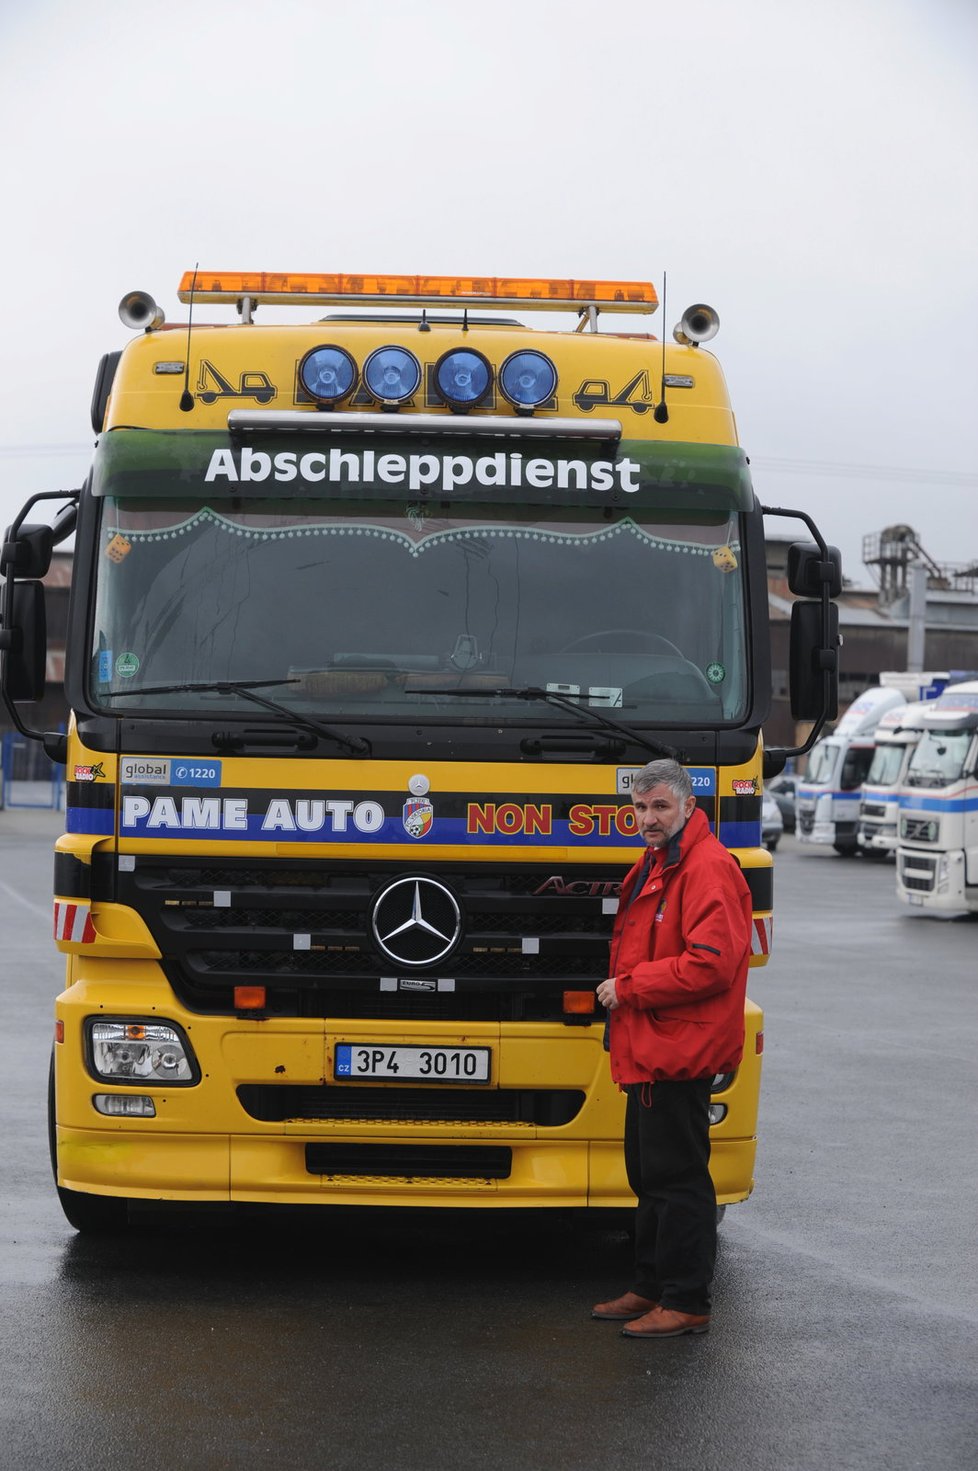 Německý nápis je na autě kvůli zásahům v zahraničí, těch ovšem poslední roky ubývá